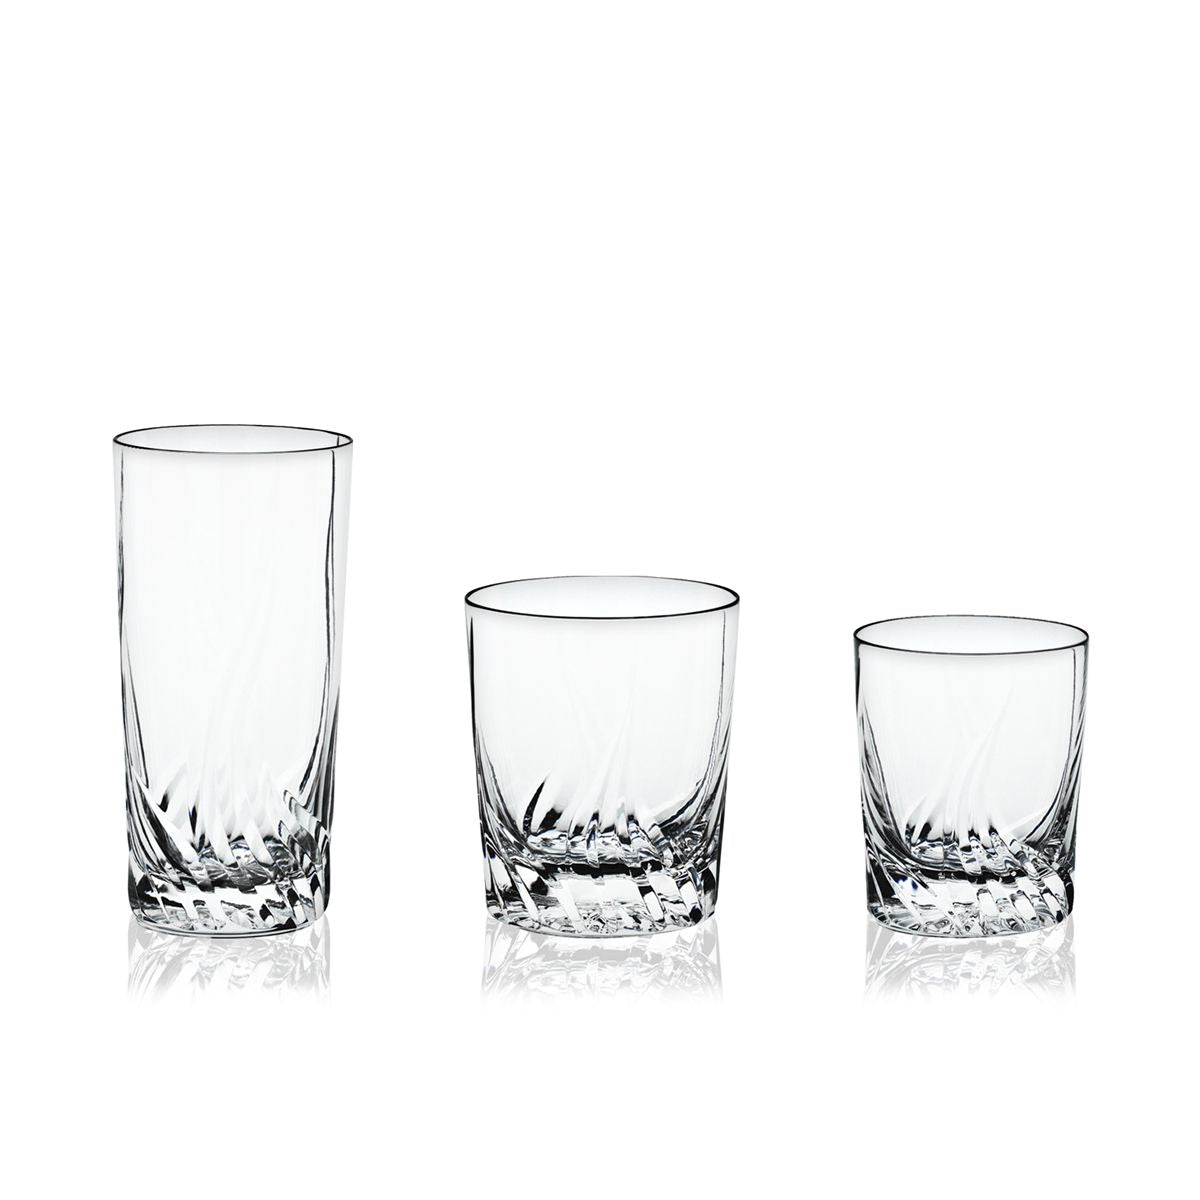 Servizio bicchieri in cristallo basso con incisione - Onda